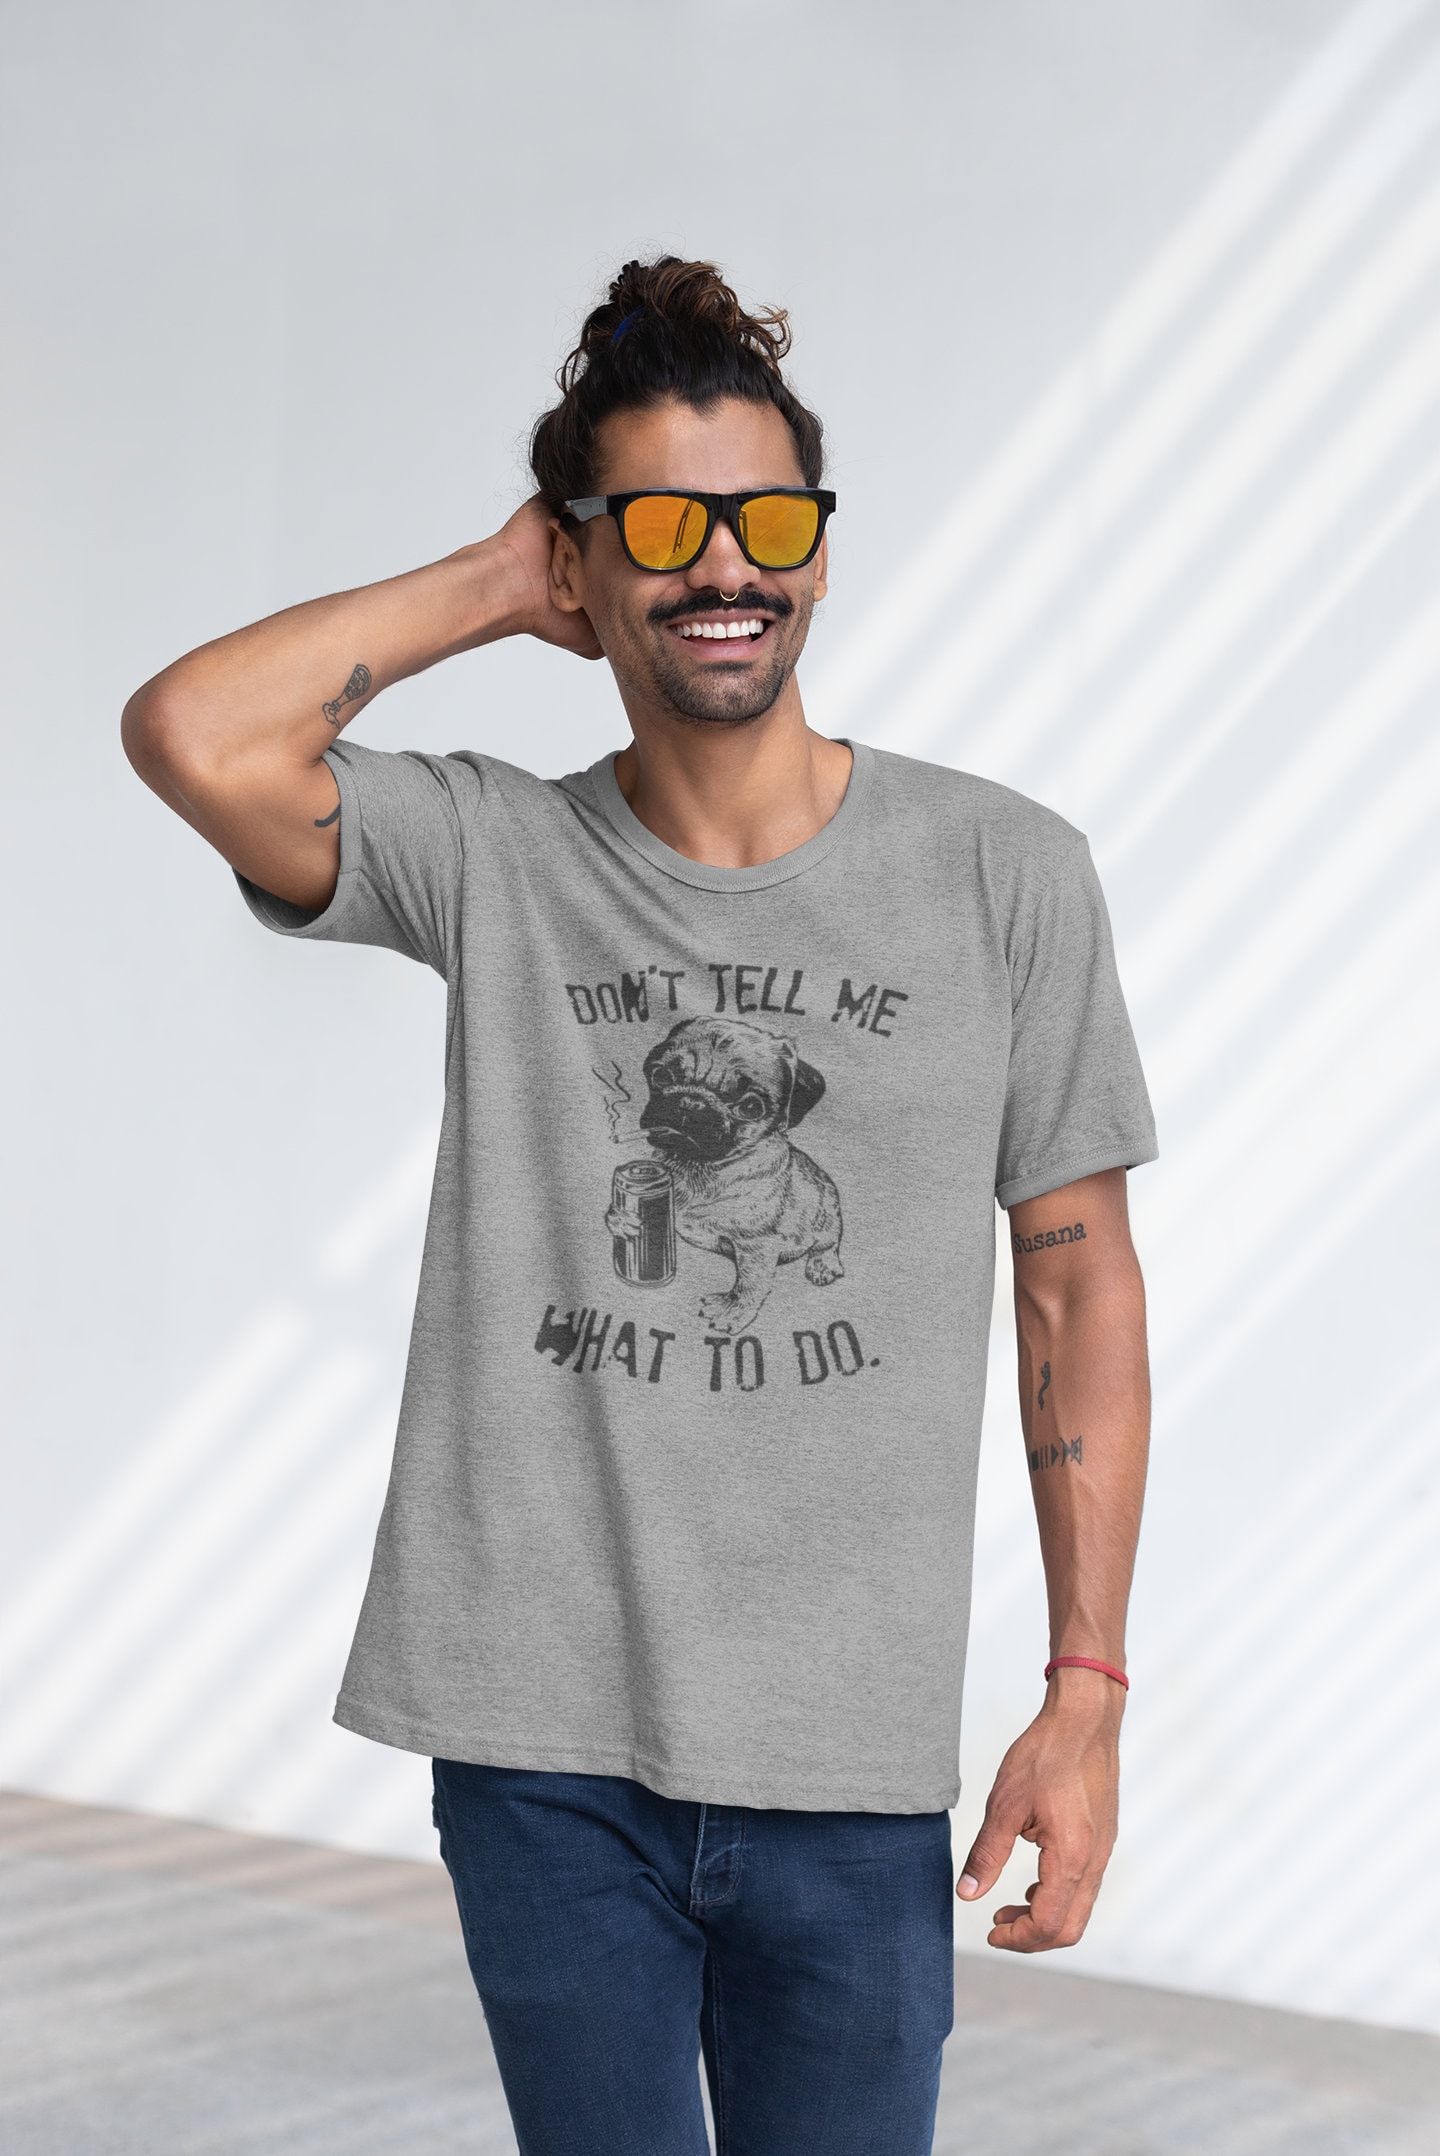 Don't Tell Me Graphic Tees Funny Shirts Mens Tshirt | Etsy